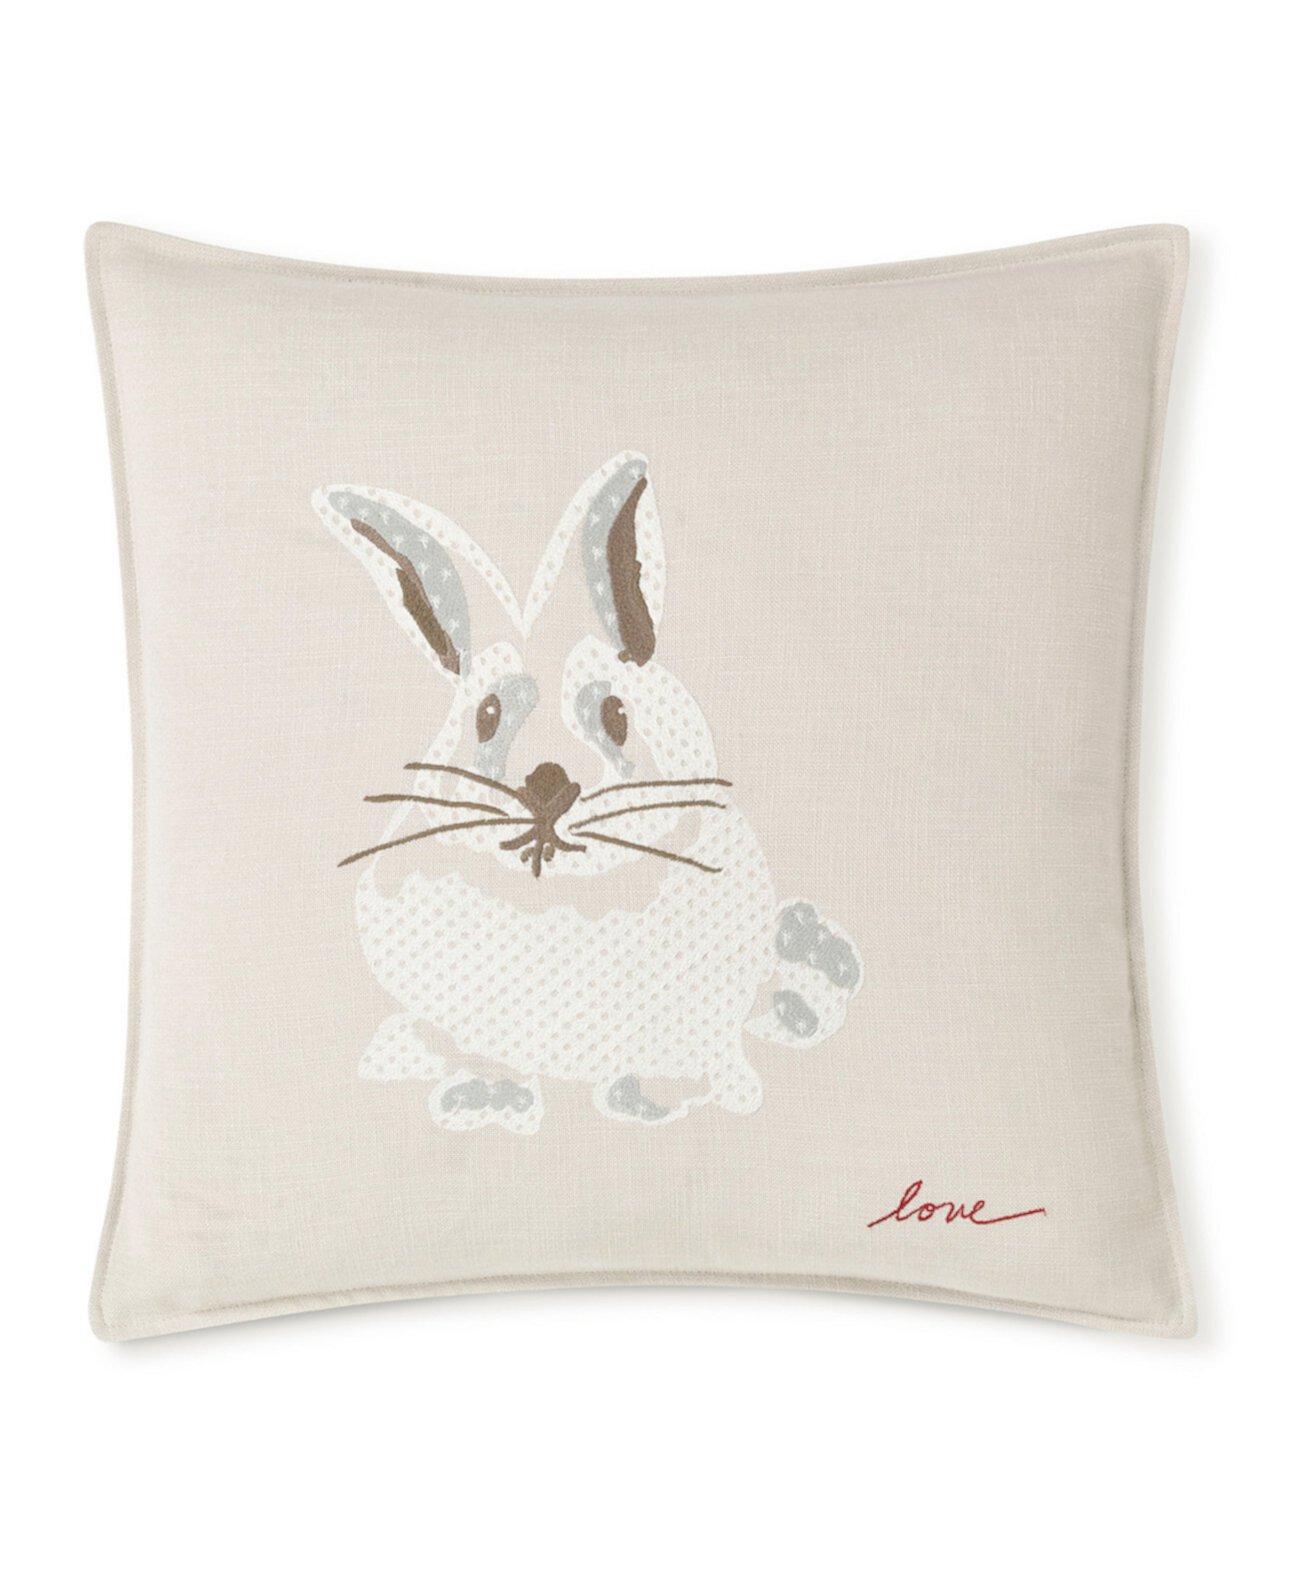 Квадратная подушка с вышивкой в виде кролика шириной 20 дюймов x 20 дюймов (ширина) ED Ellen DeGeneres